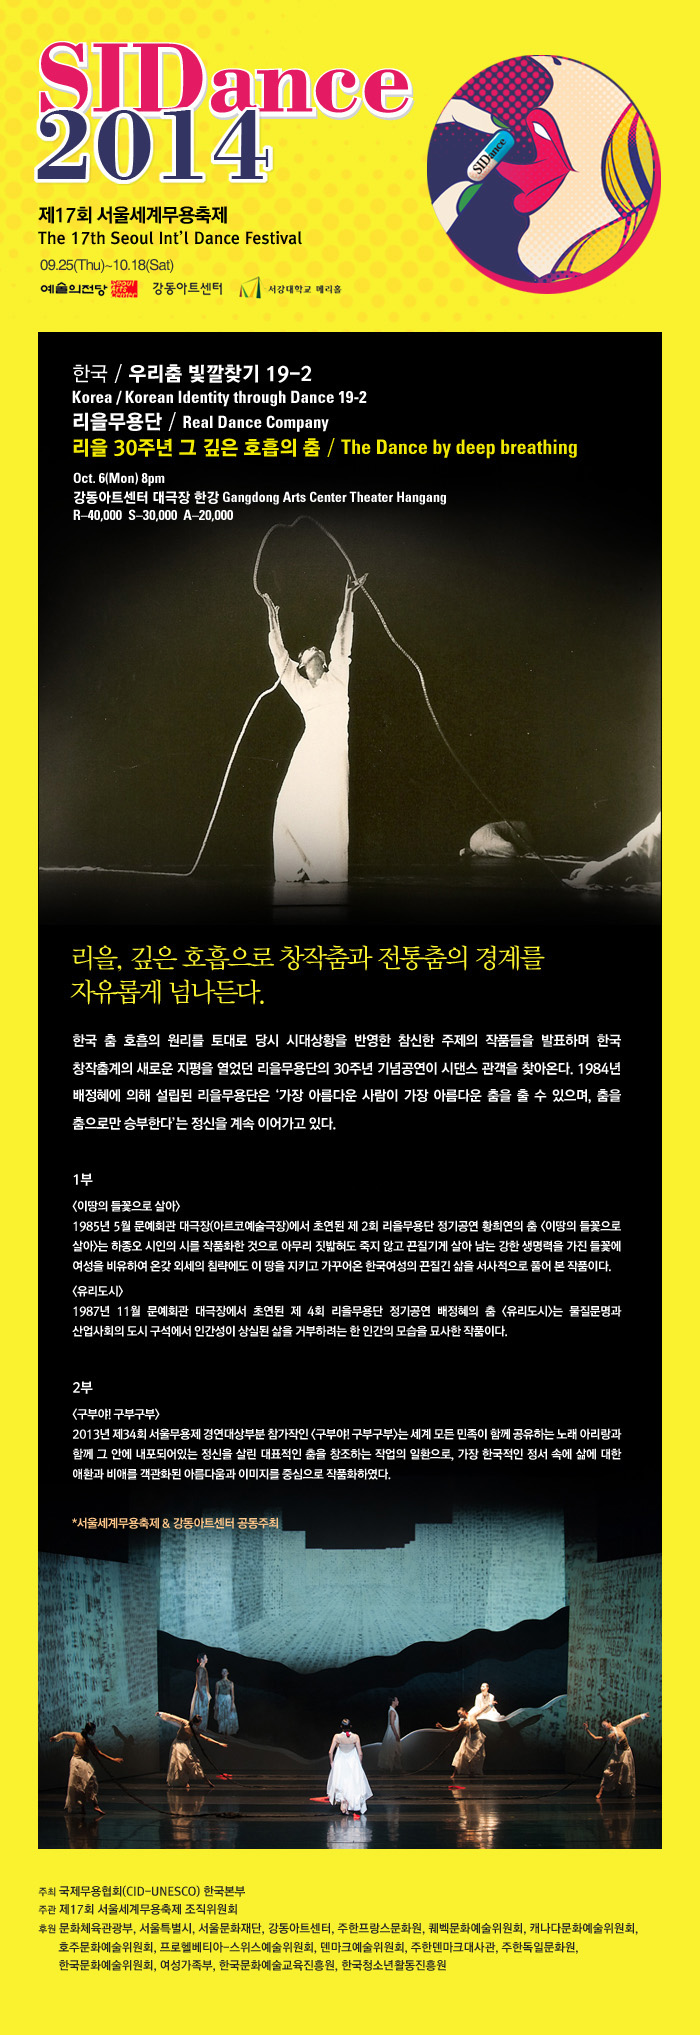 ticket_prgm_Korean_Identity_through_Dance_19-2_m.jpg